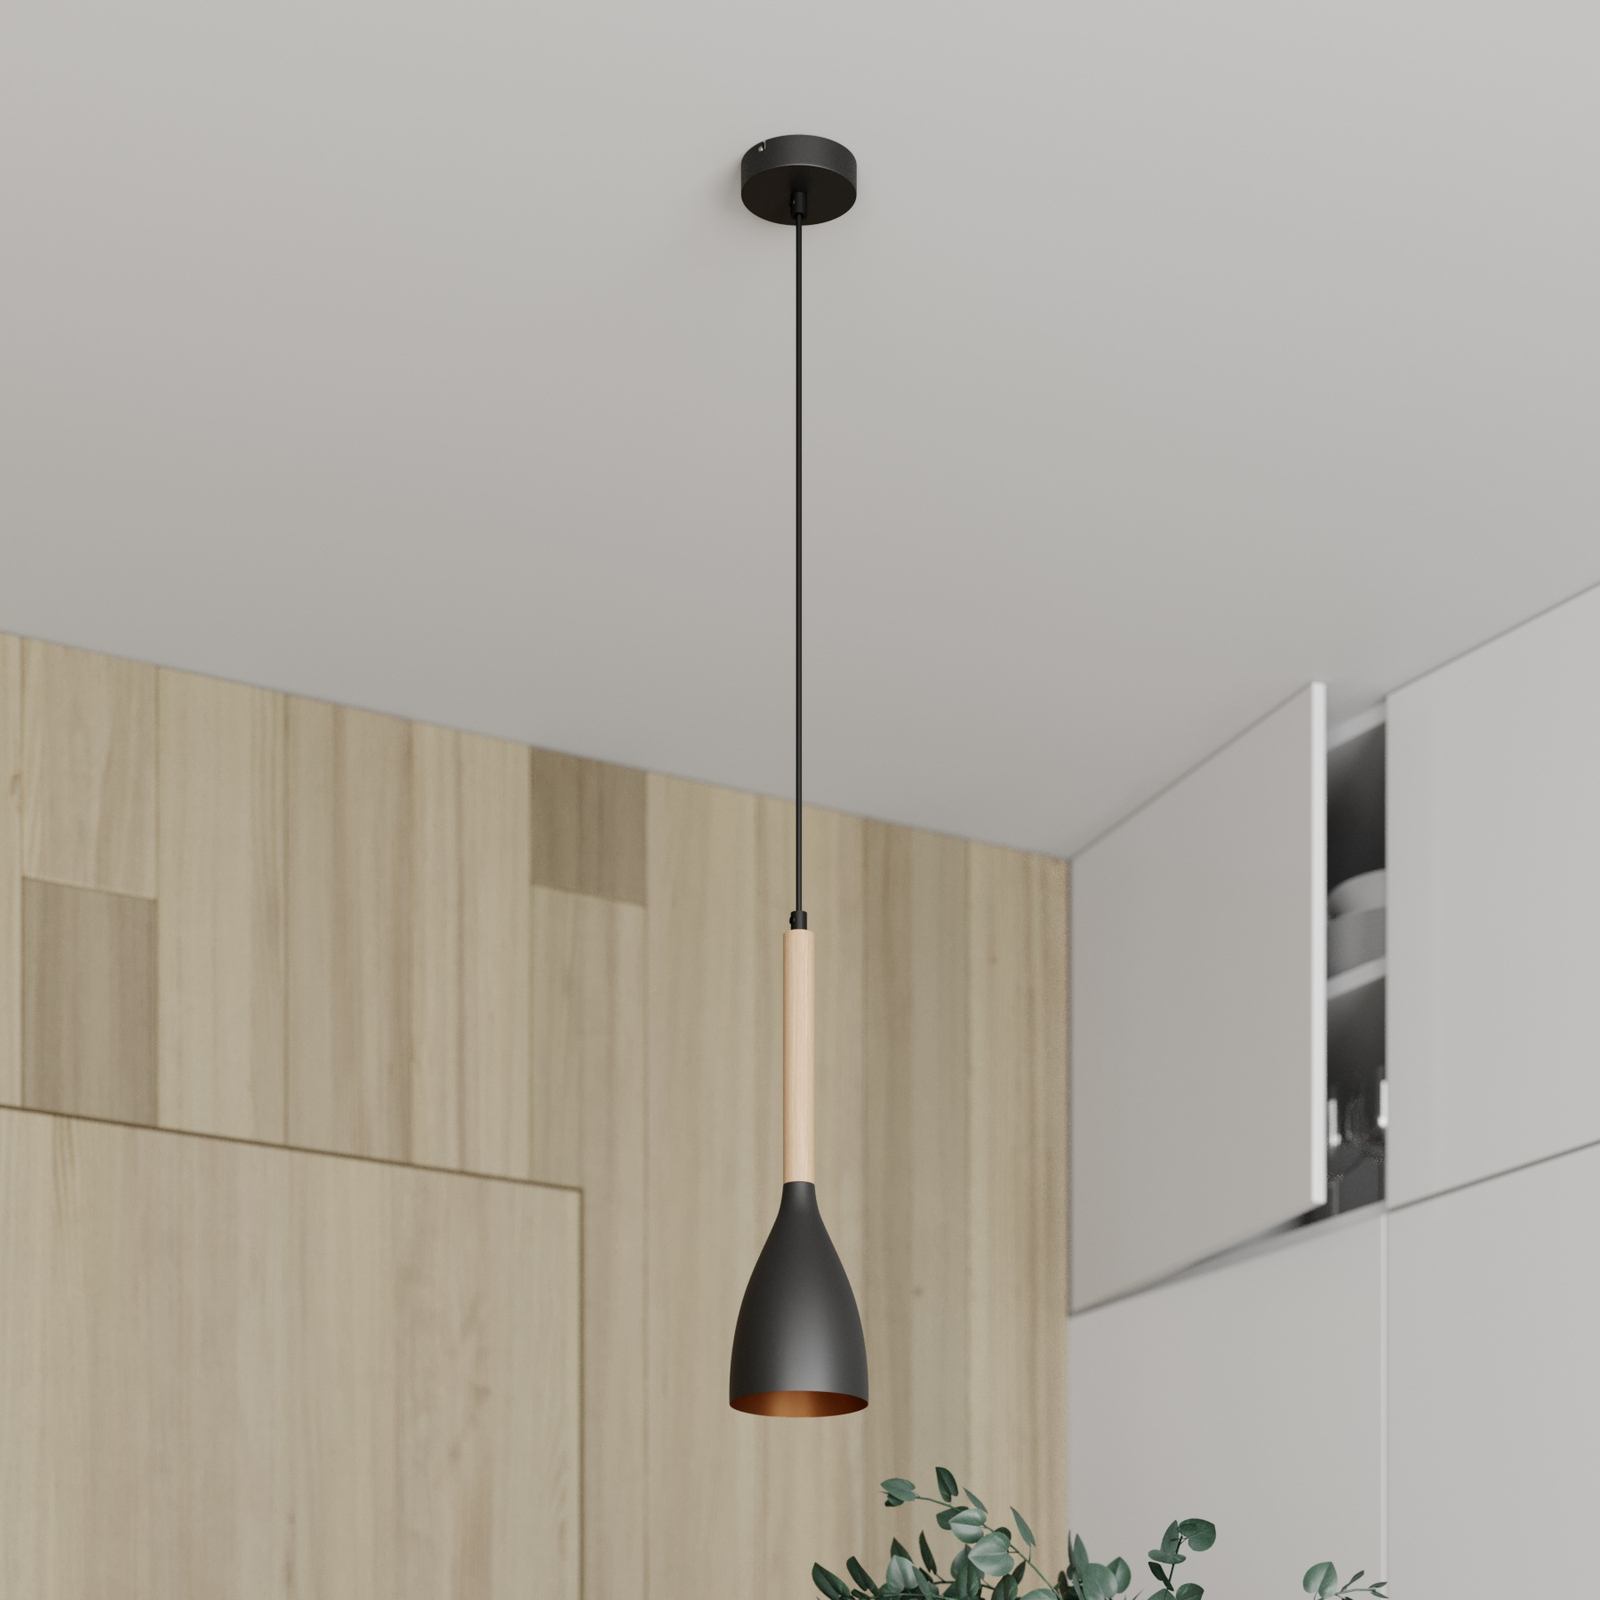 Muza pendant light, 1-bulb, black/light wood